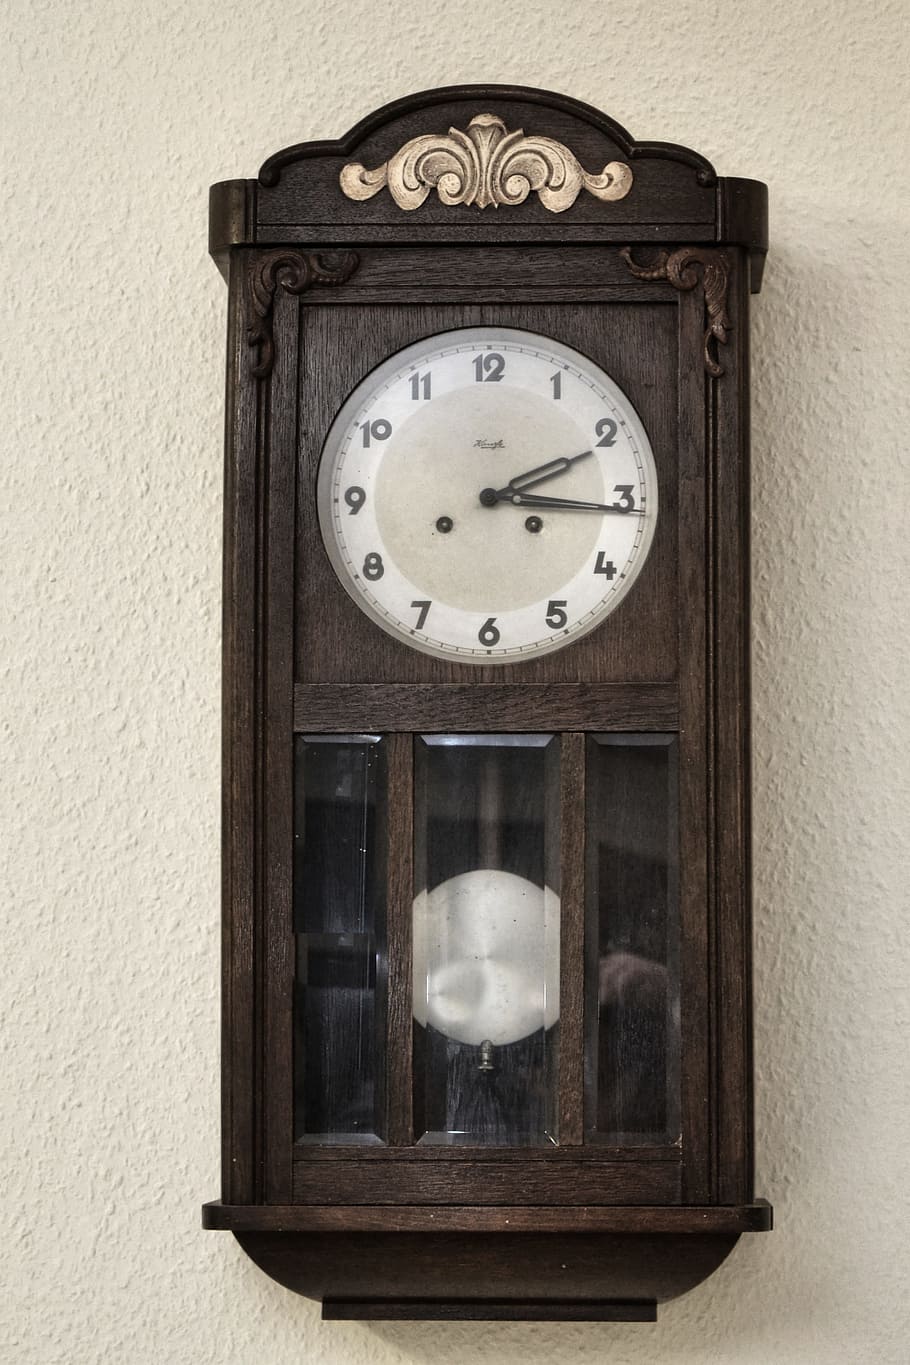 Regulador, Relógio de parede, Velho, relógio, historicamente, nostálgico, nostalgia, tempo, janela, à moda antiga